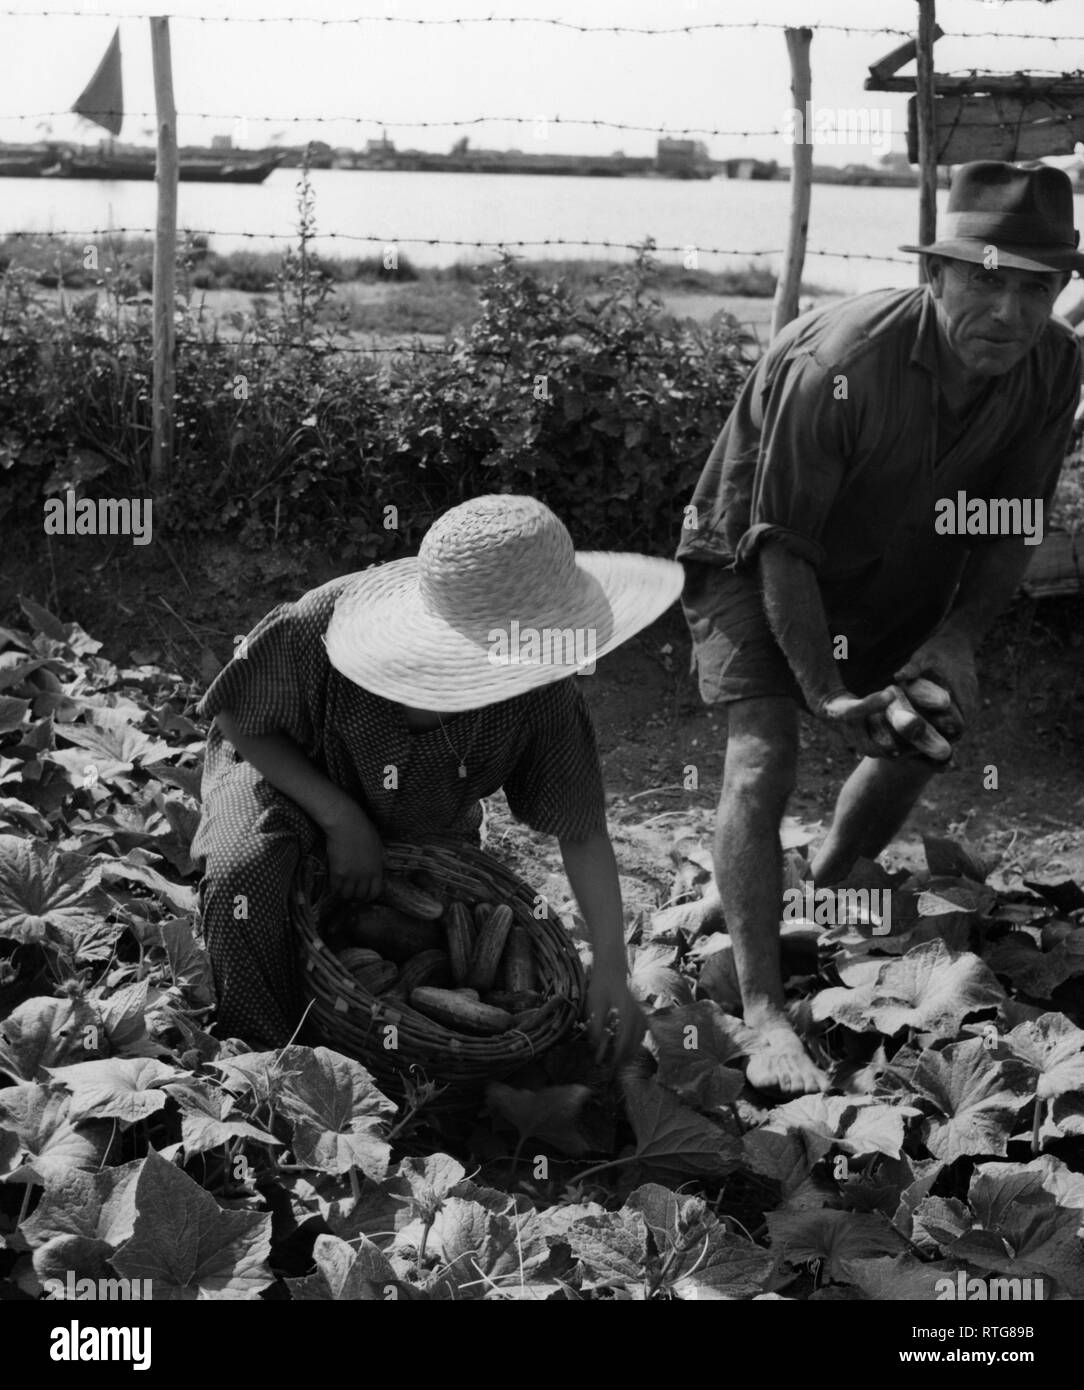 La récolte des concombres, Chioggia, Veneto, Italie 1955 Banque D'Images